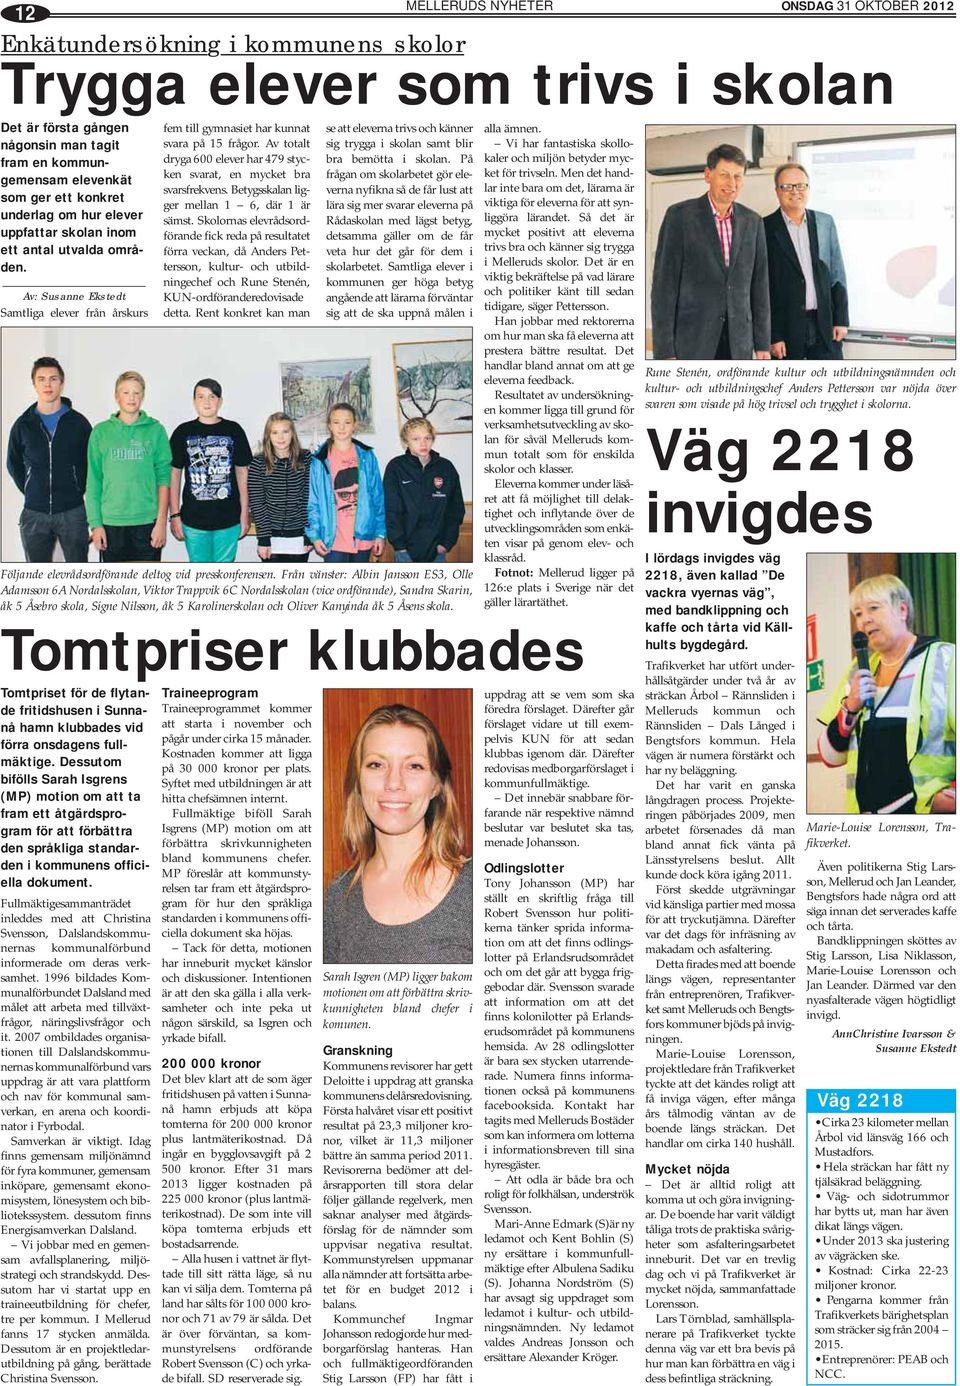 Av: Susanne Ekstedt Samtliga elever från årskurs Tomtpriset för de flytande fritidshusen i Sunnanå hamn klubbades vid förra onsdagens fullmäktige.